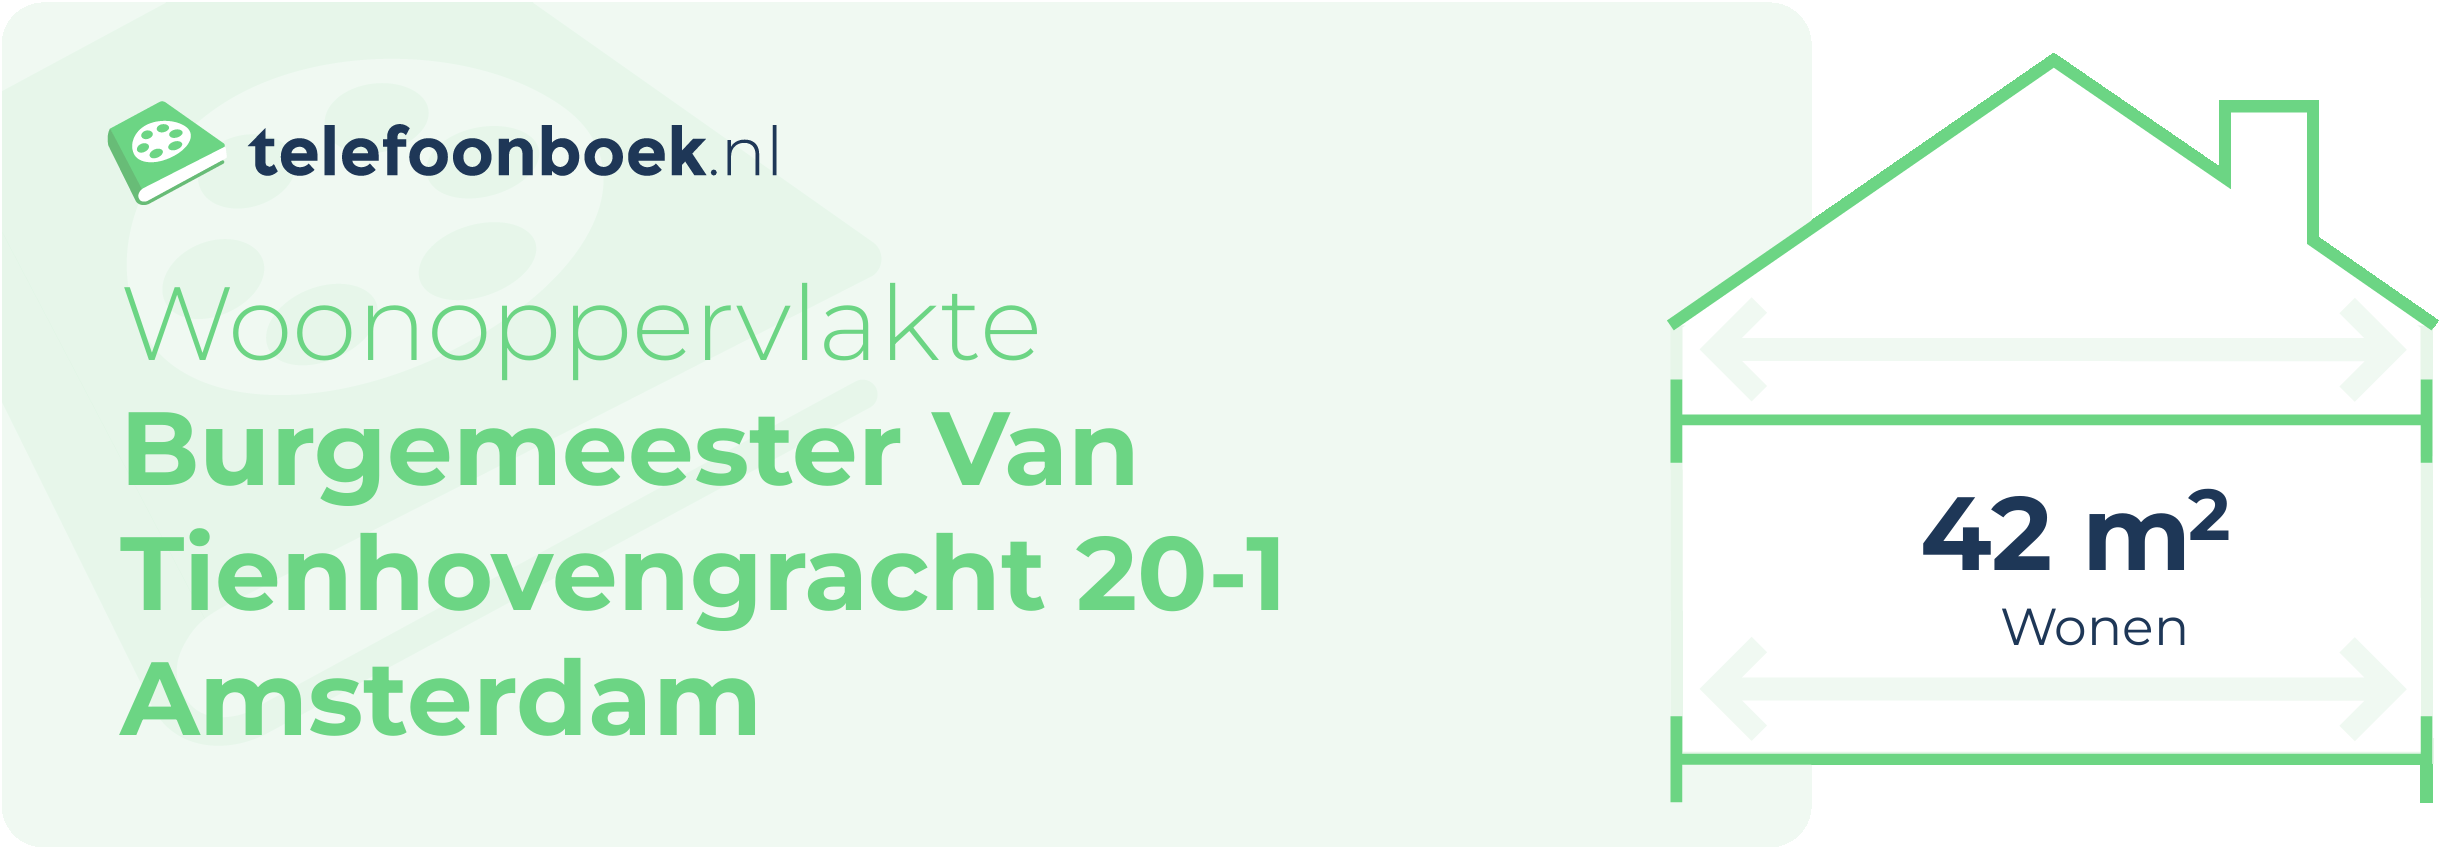 Woonoppervlakte Burgemeester Van Tienhovengracht 20-1 Amsterdam